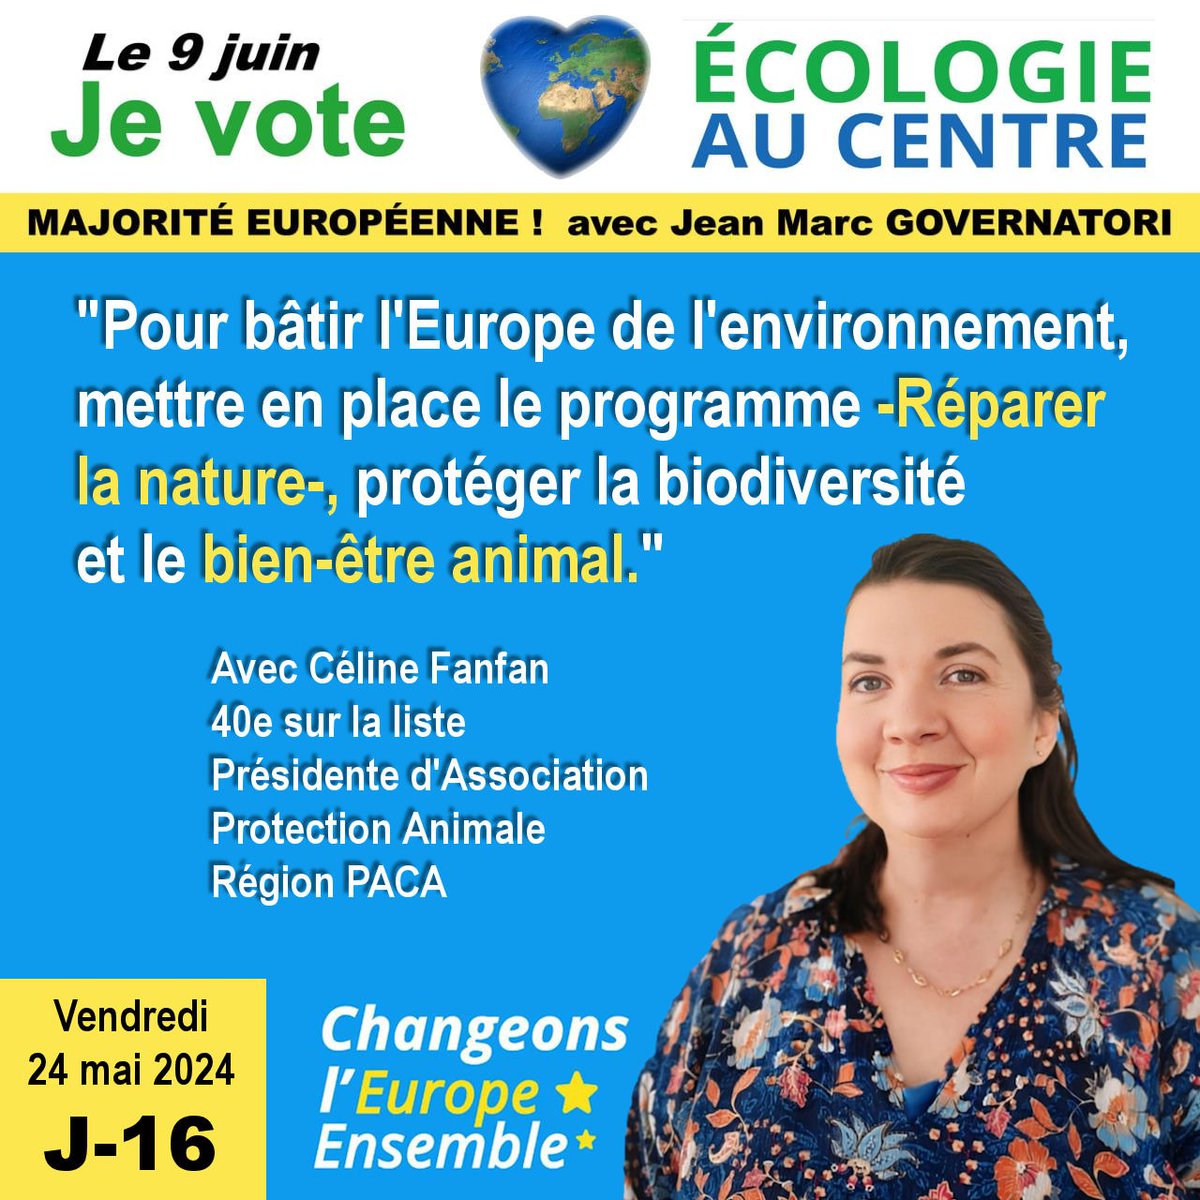 J-16 avant l'élection Européenne. 1 jour, 1 tour, 1 vote @JM_Governatori 🇪🇺 #EcologieAuCentre #Europeennes2024 #Européennes #Europe